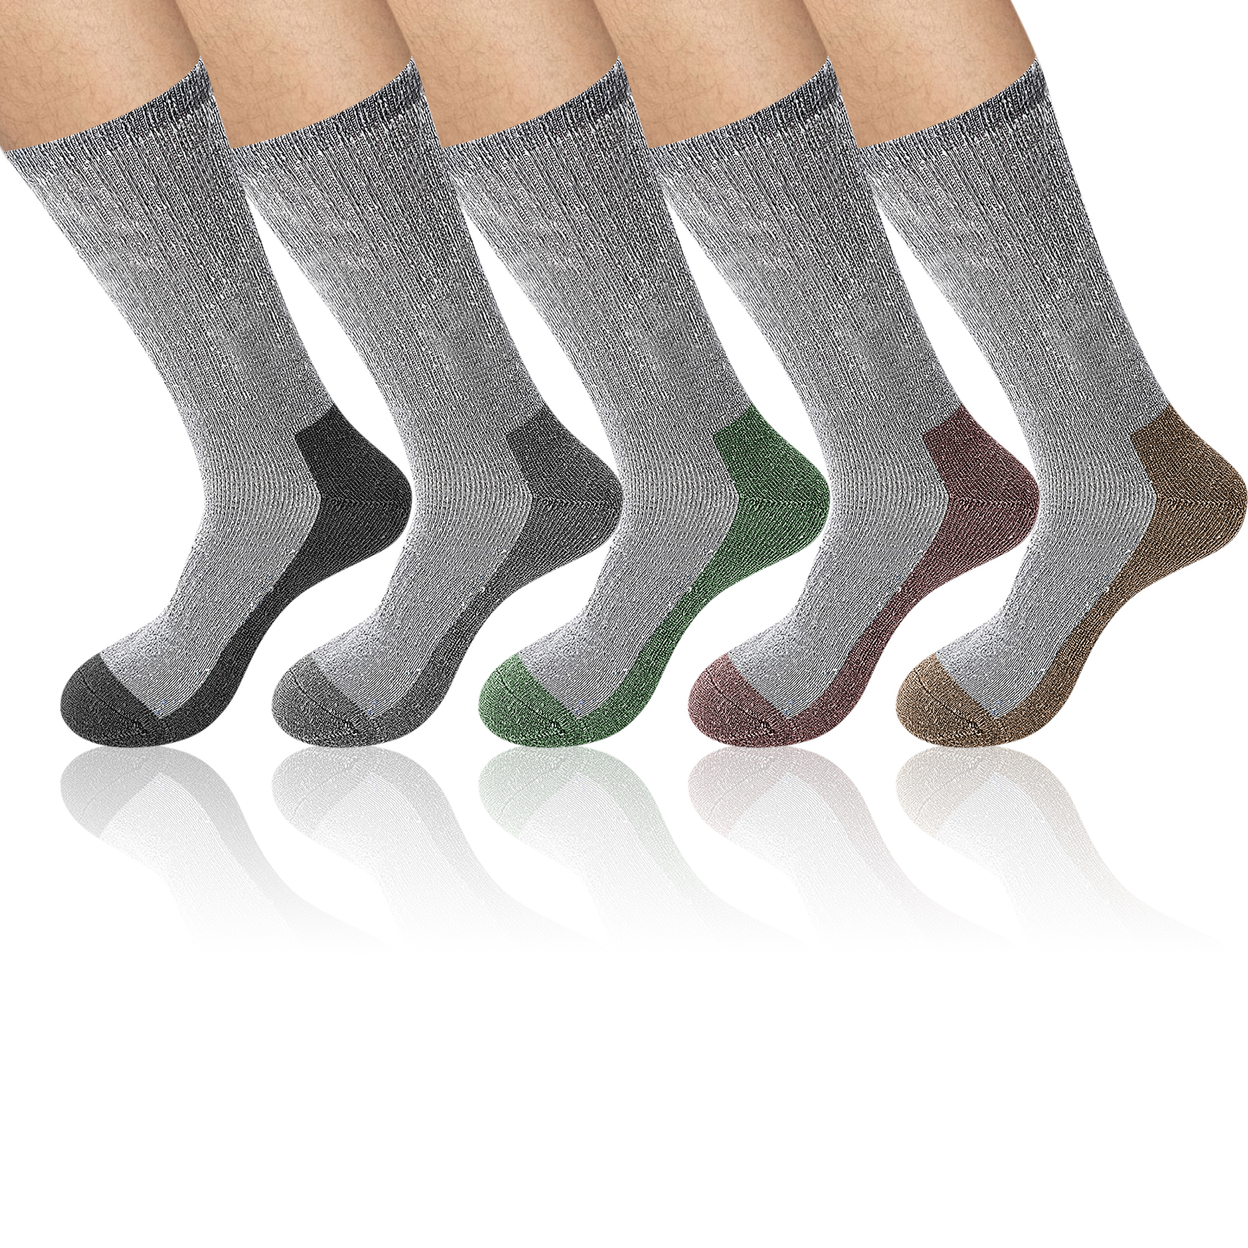 6-Pairs: Men's Warm Thick Merino Lamb Wool Socks